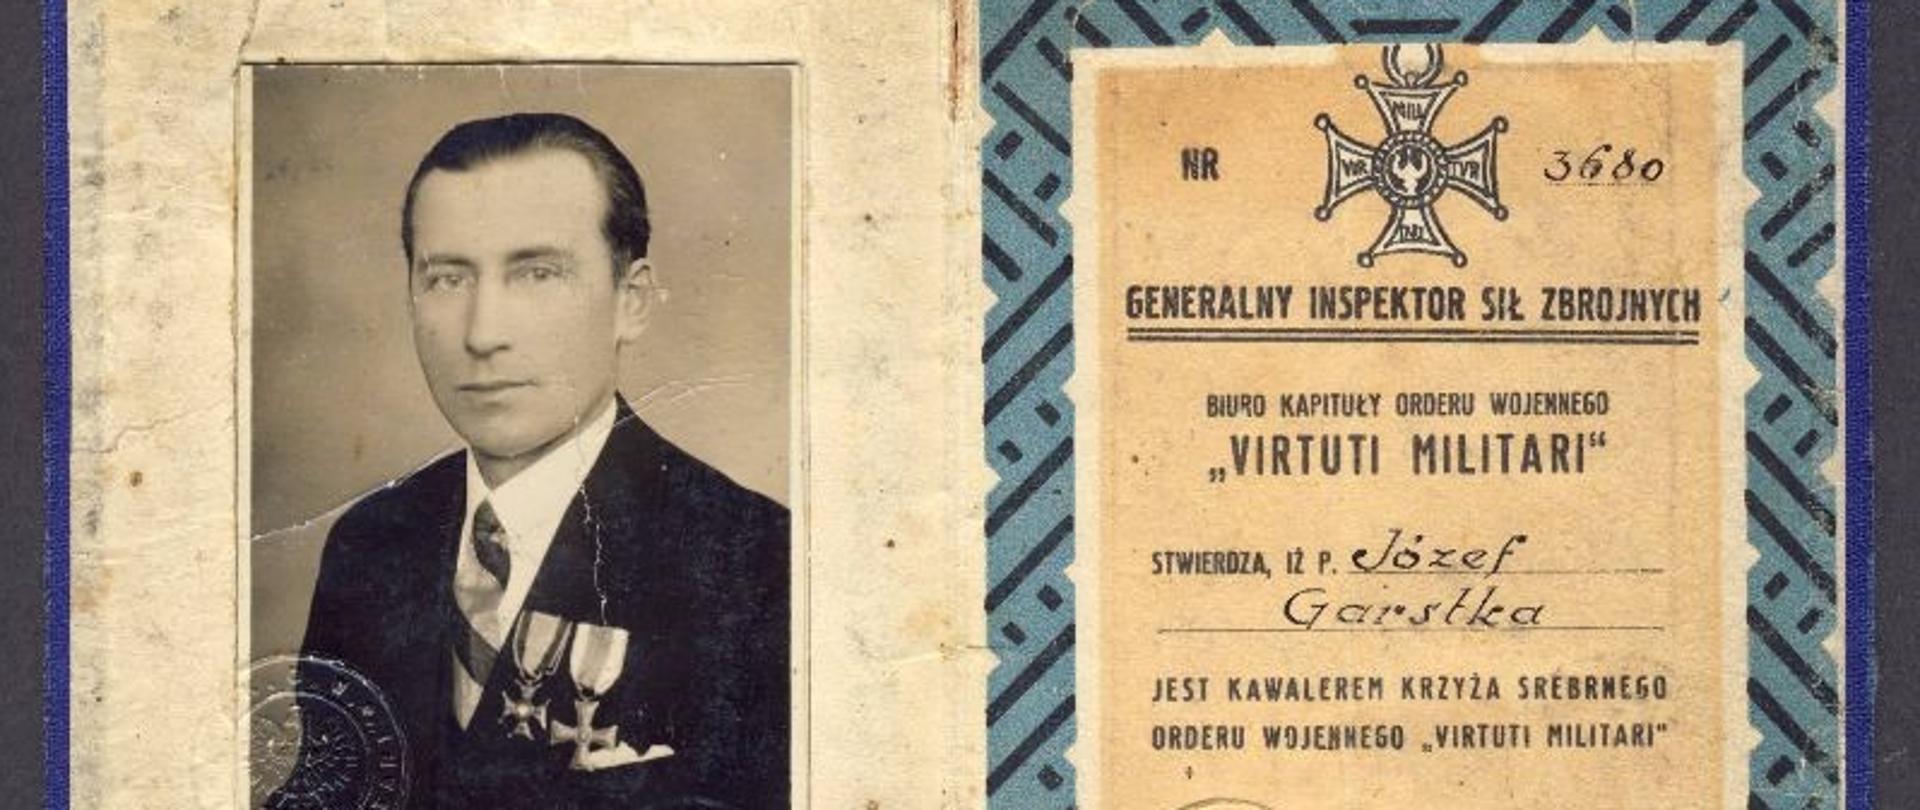 Józef Garstka - legitymacja kawalera Krzyża Srebrnego Orderu Wojennego Virtuti Militari